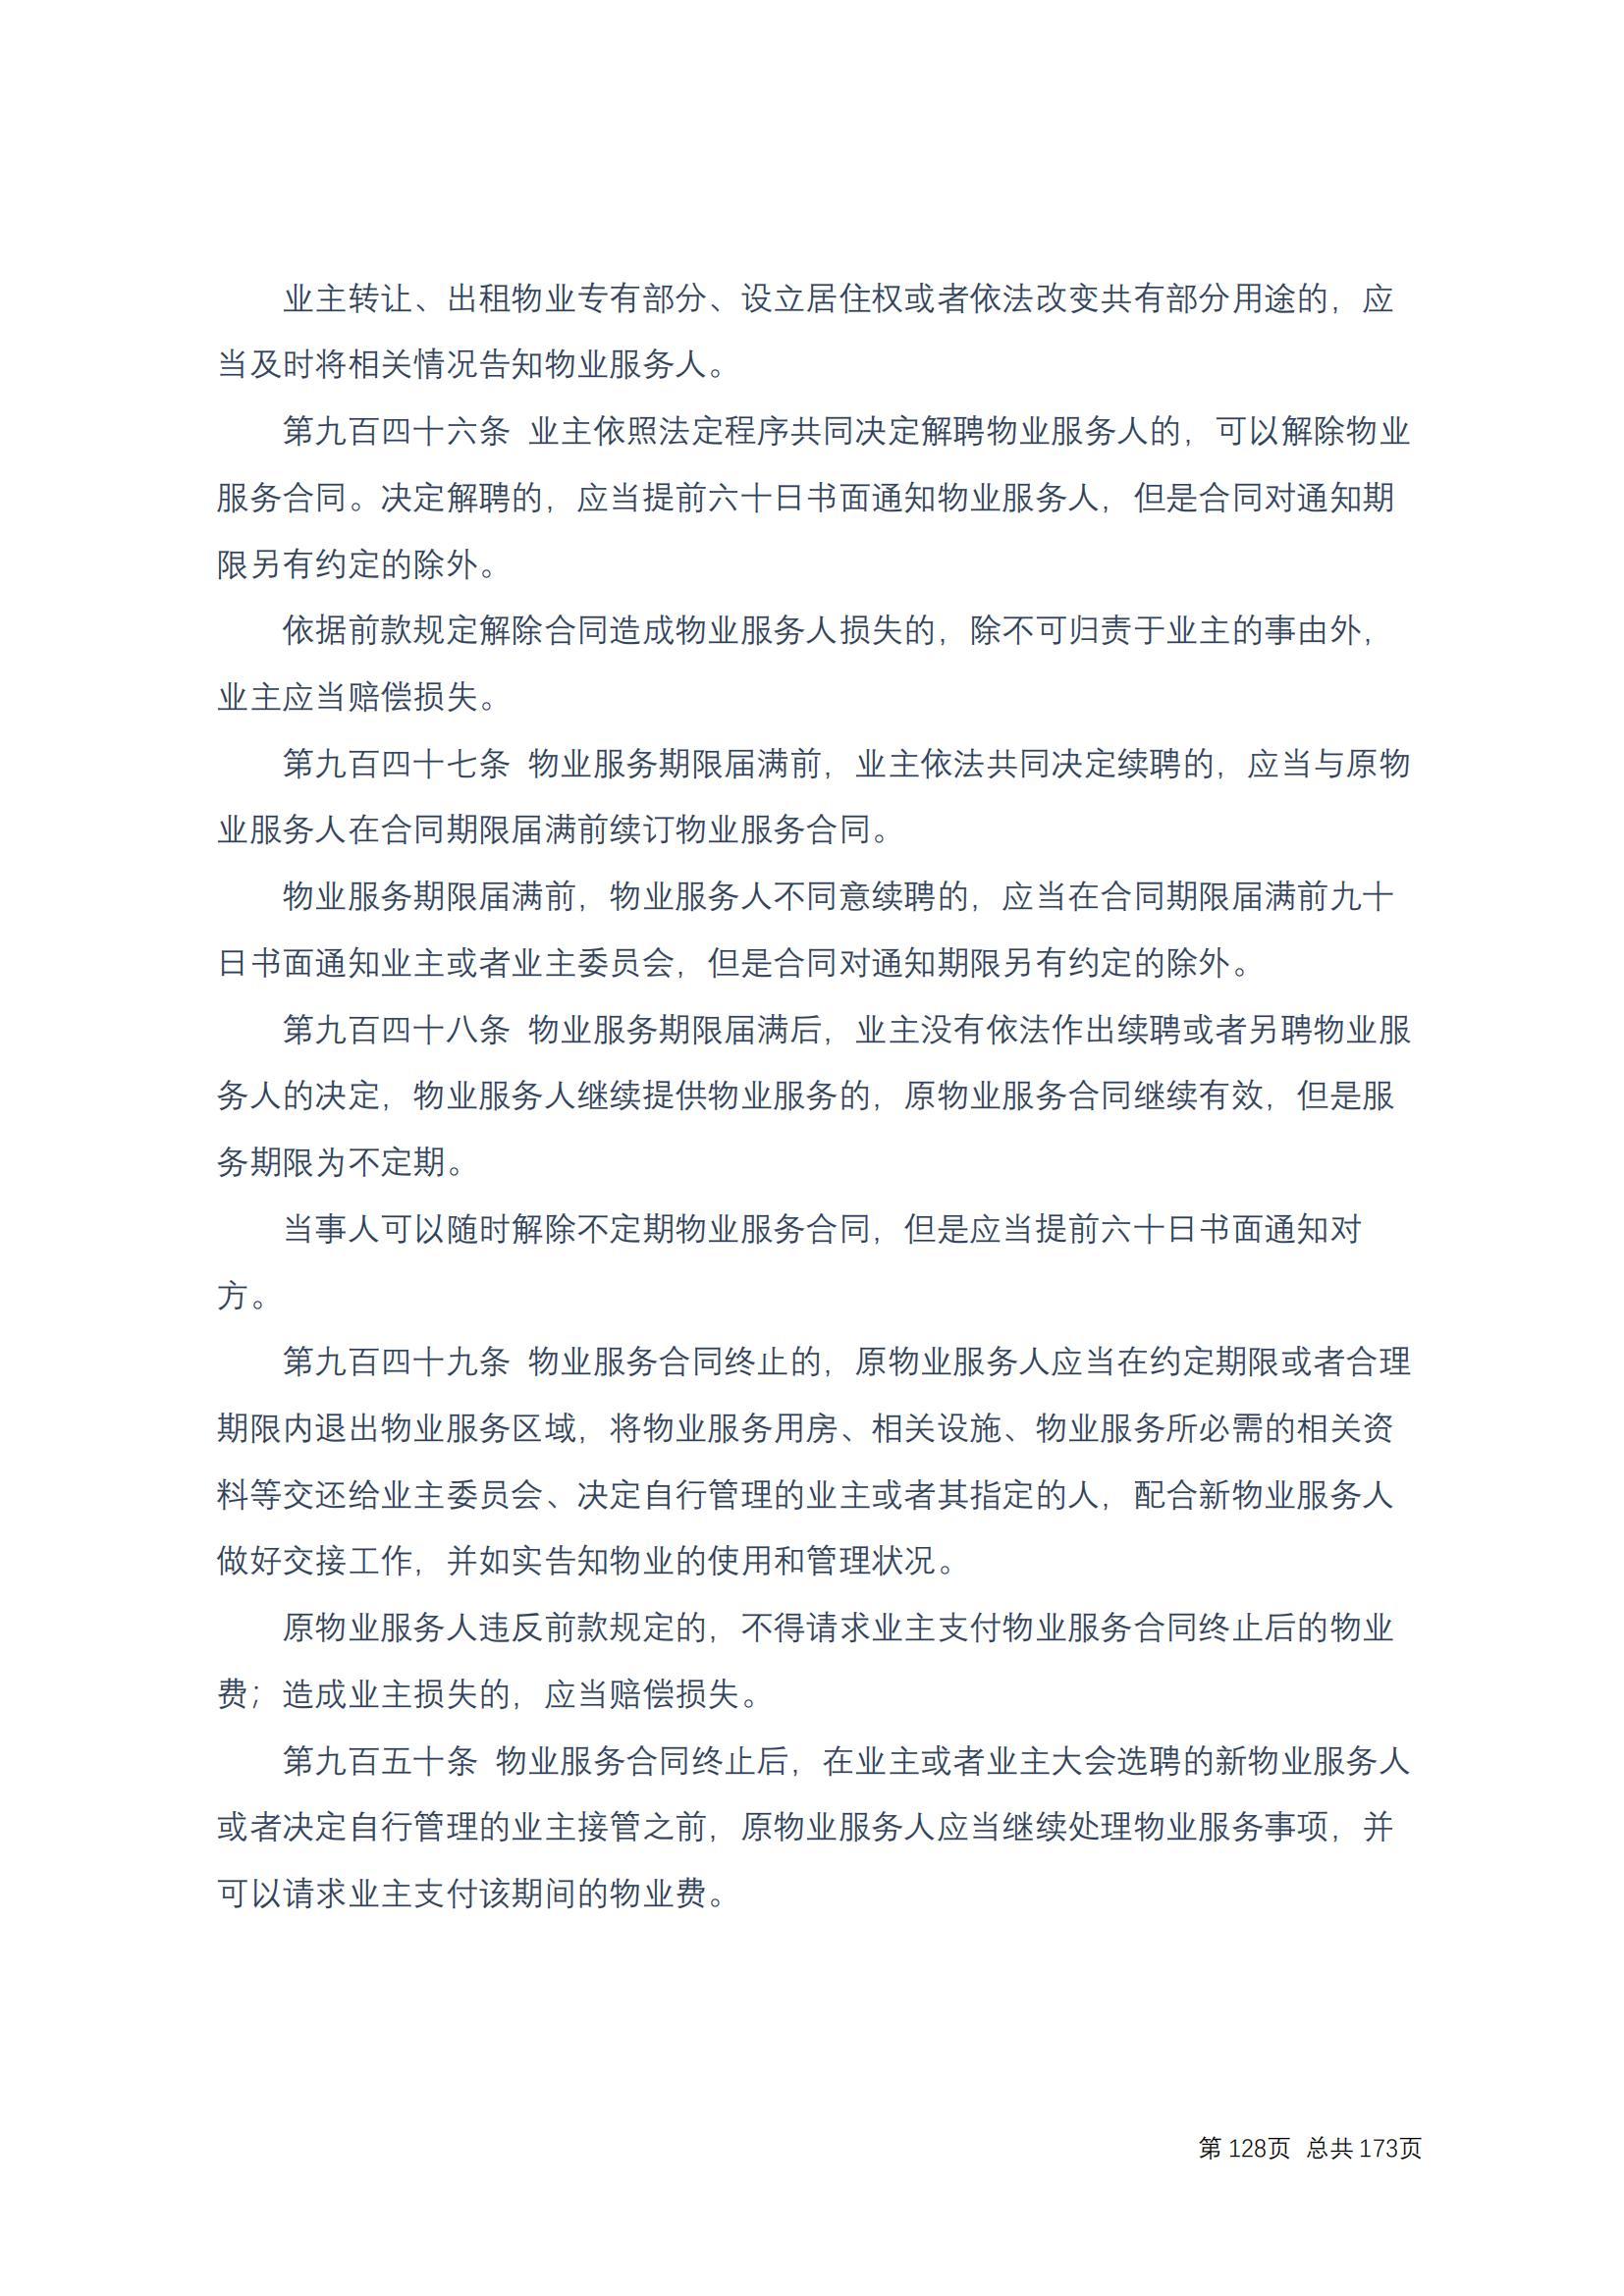 中华人民共和国民法典 修改过_127